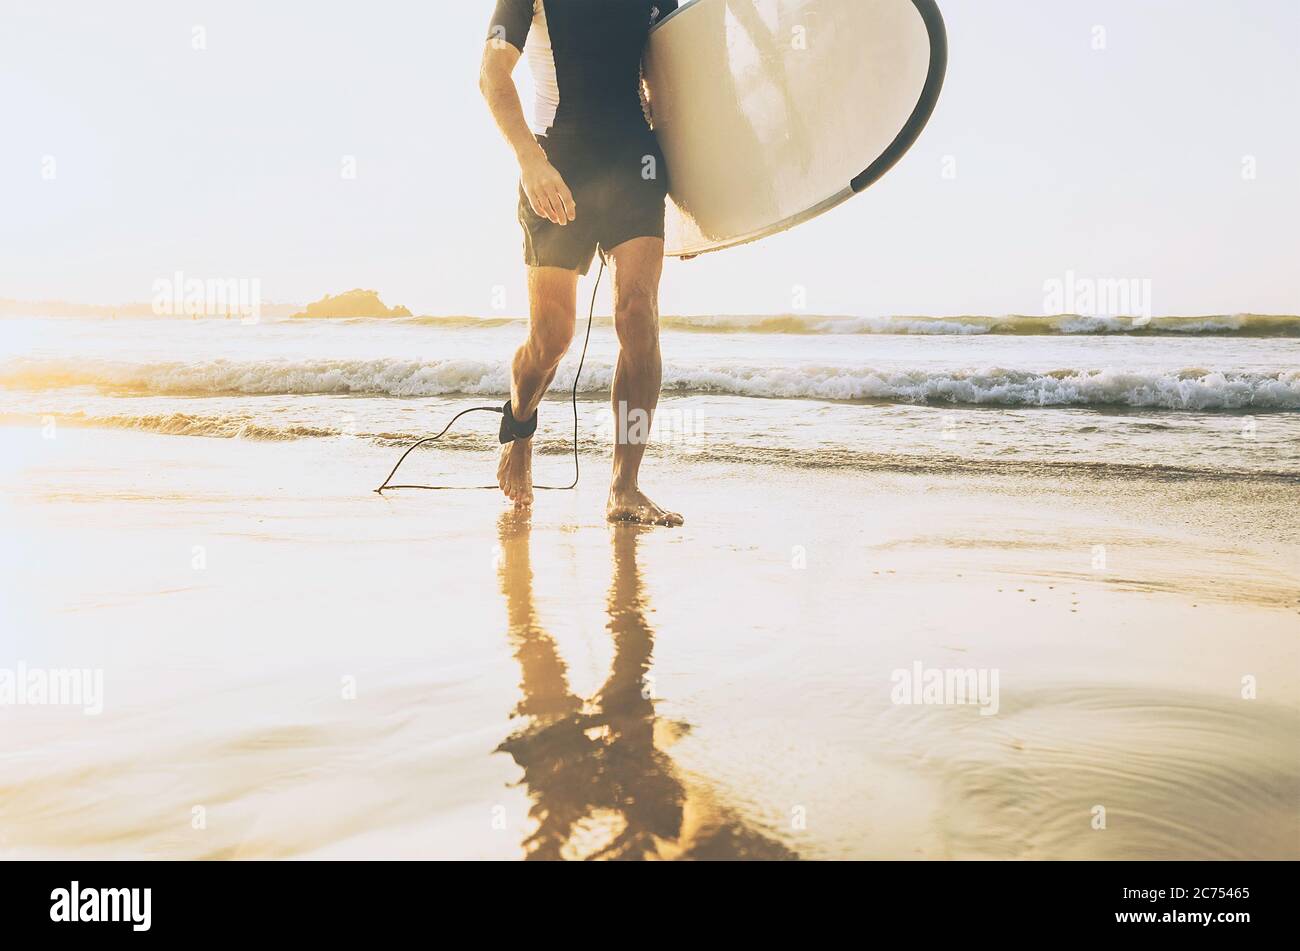 Surfer Mann mit langen Board zu Fuß aus dem Meer Wellen auf sonnigen Strand. Konzept für aktive Urlaubszeit. Stockfoto